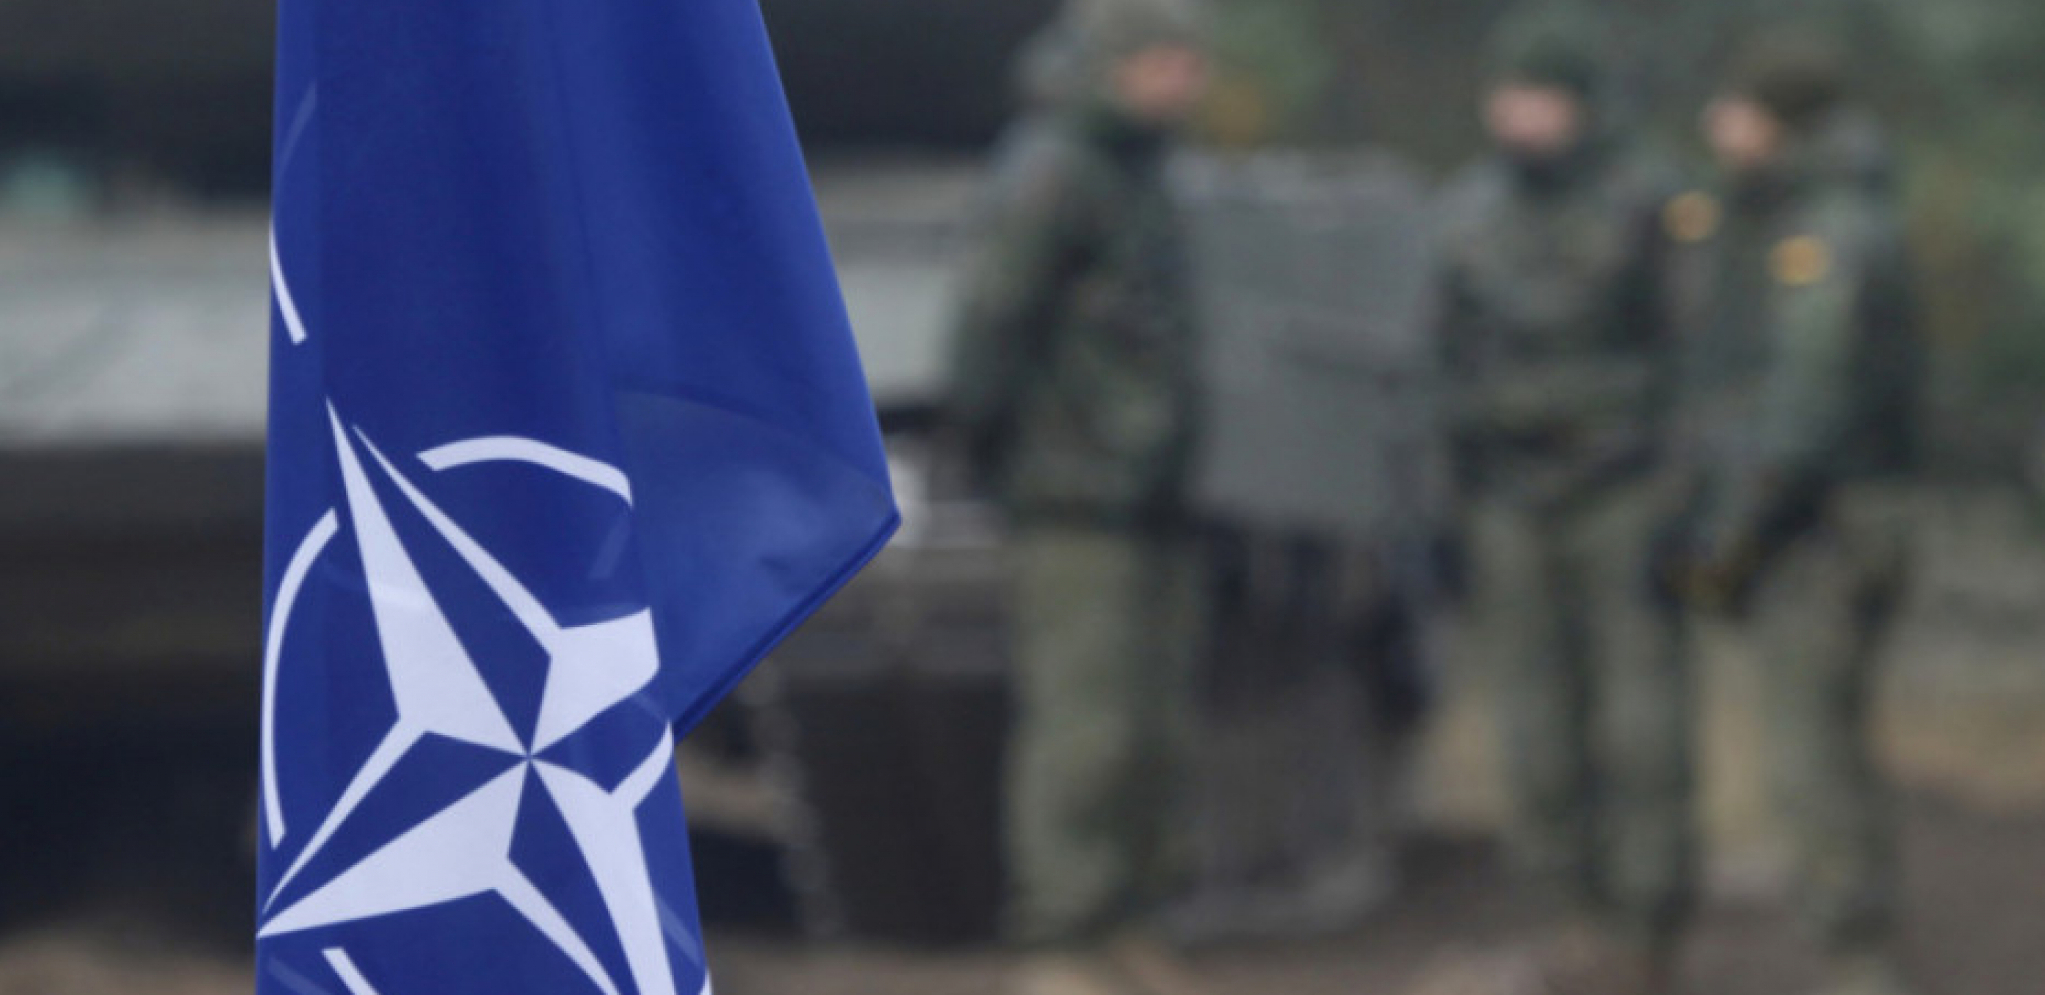 U MADRIDU SE KROJI SUDBINA SVETA: NATO će proglasiti Rusiju pretnjom po bezbednost!